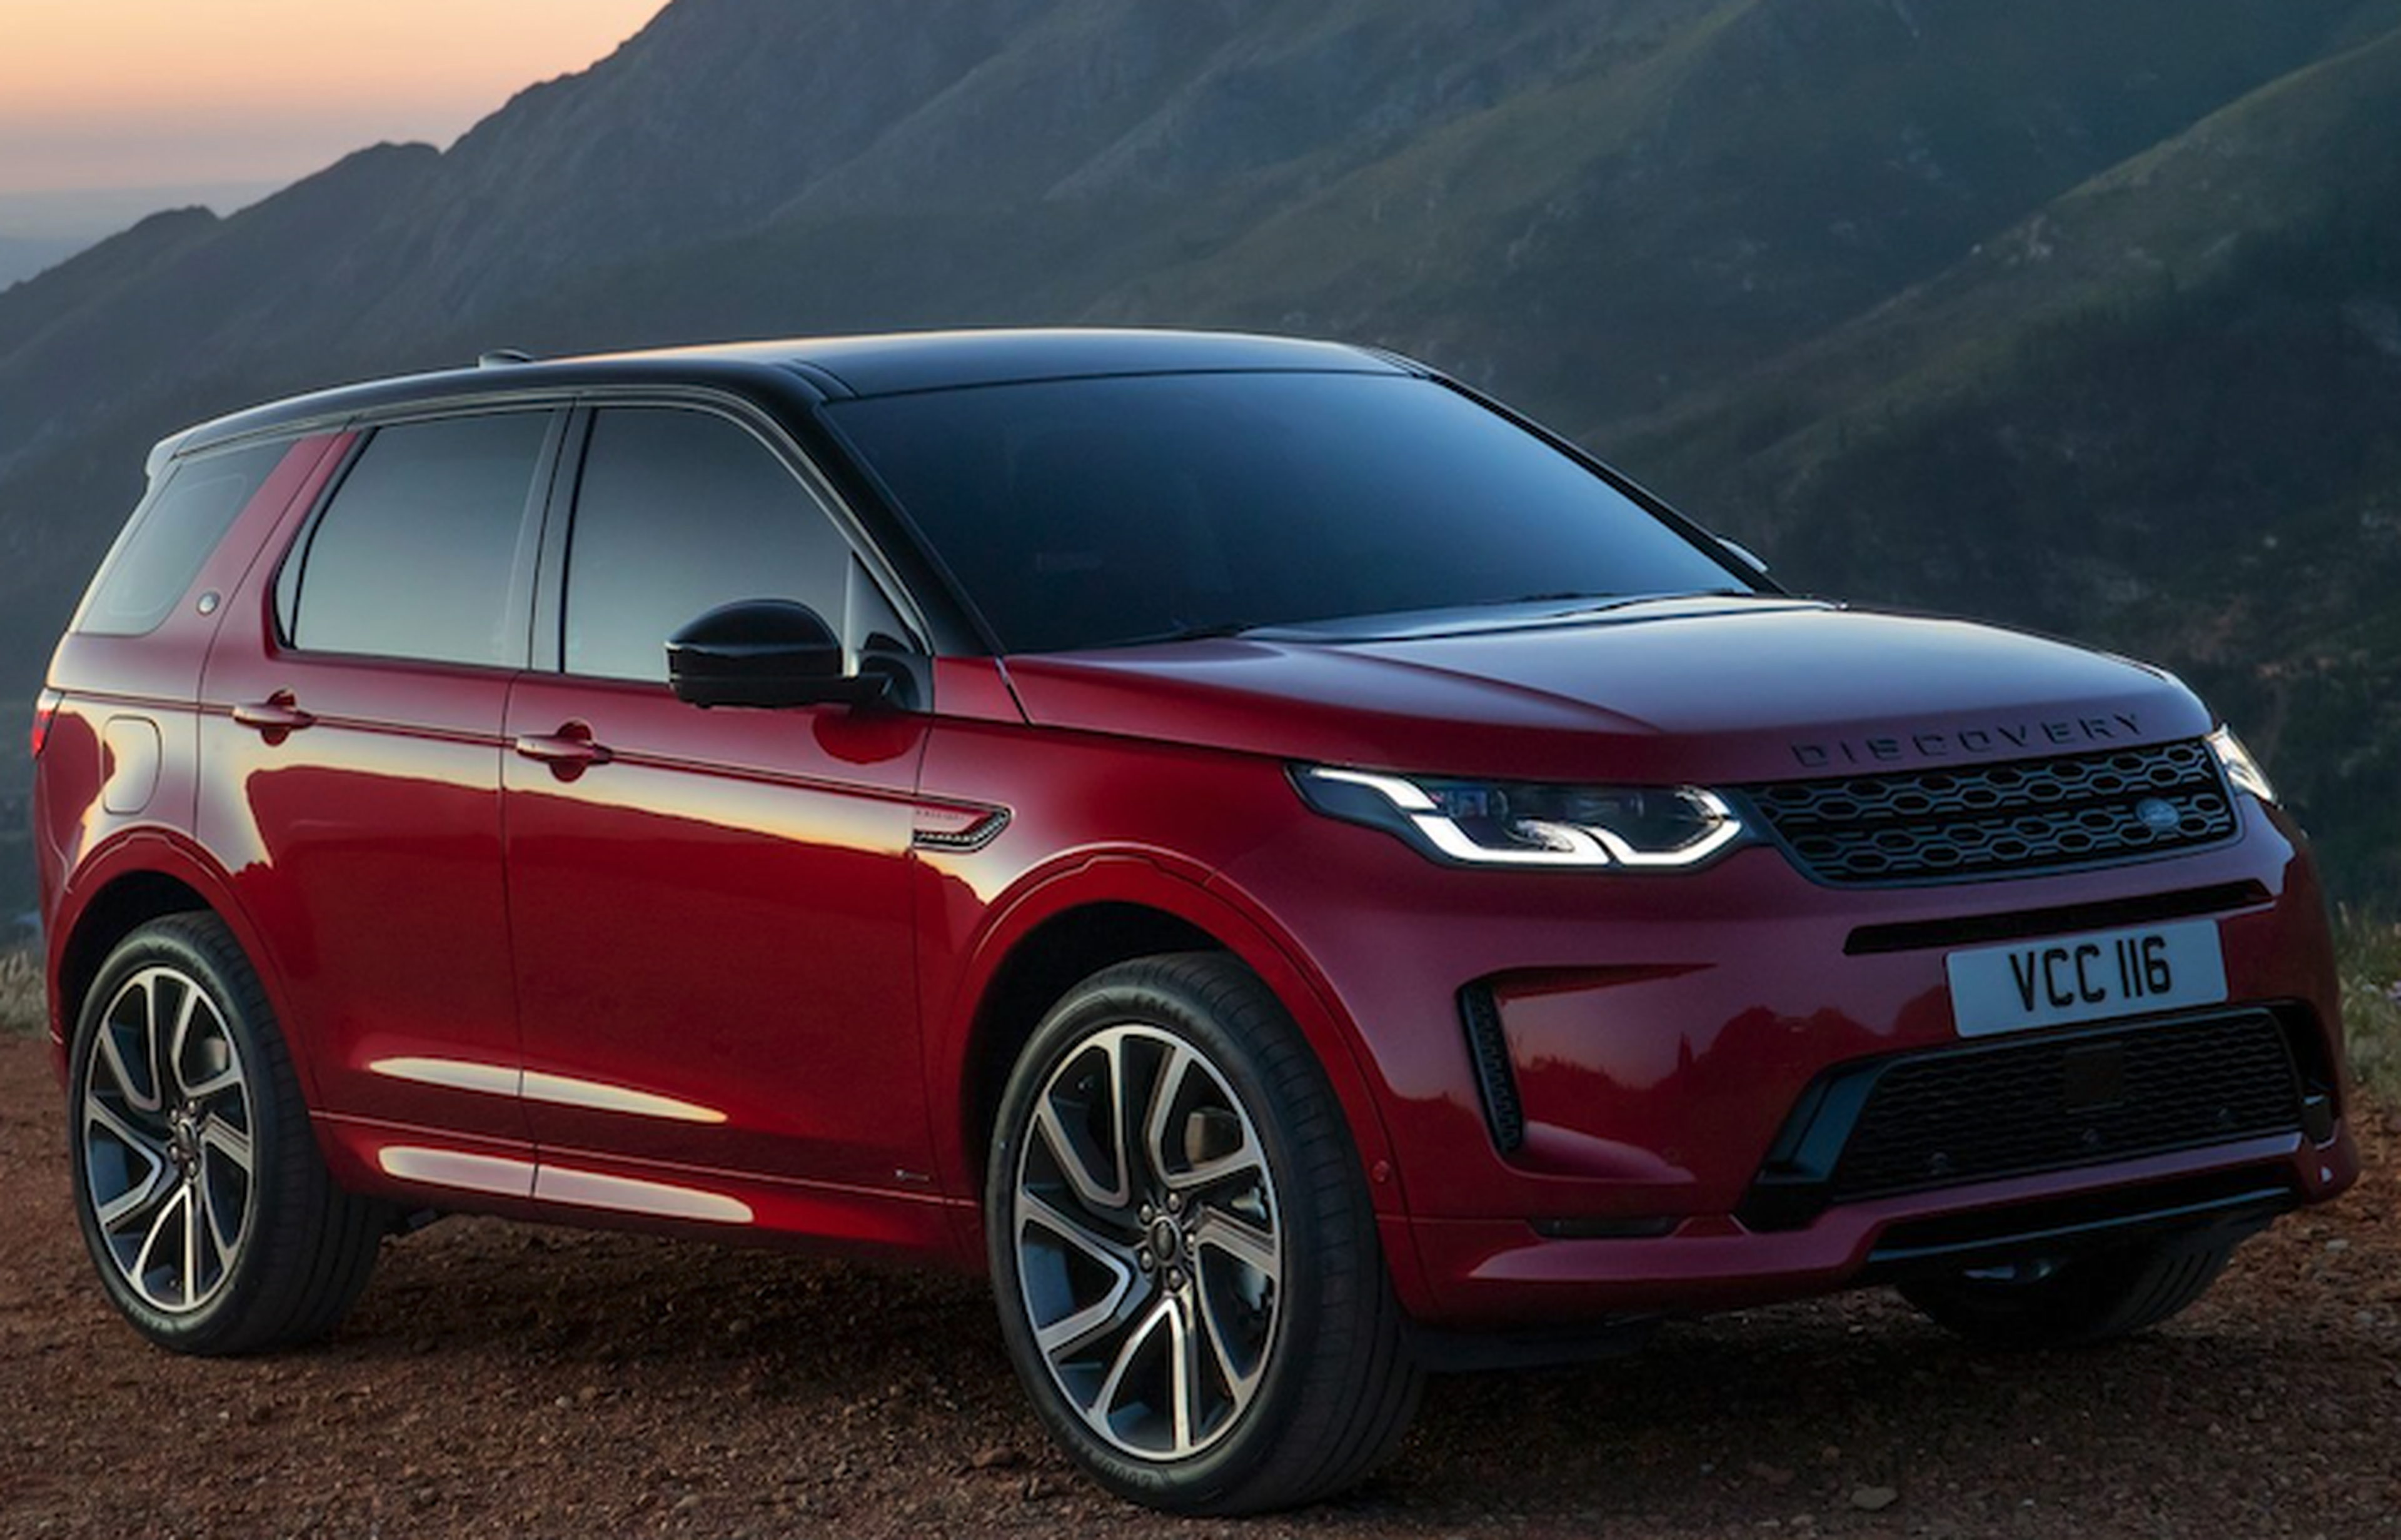 VÍDEO:El Land Rover Discovery Sport 2019 al desnudo, detalles, especificaciones...